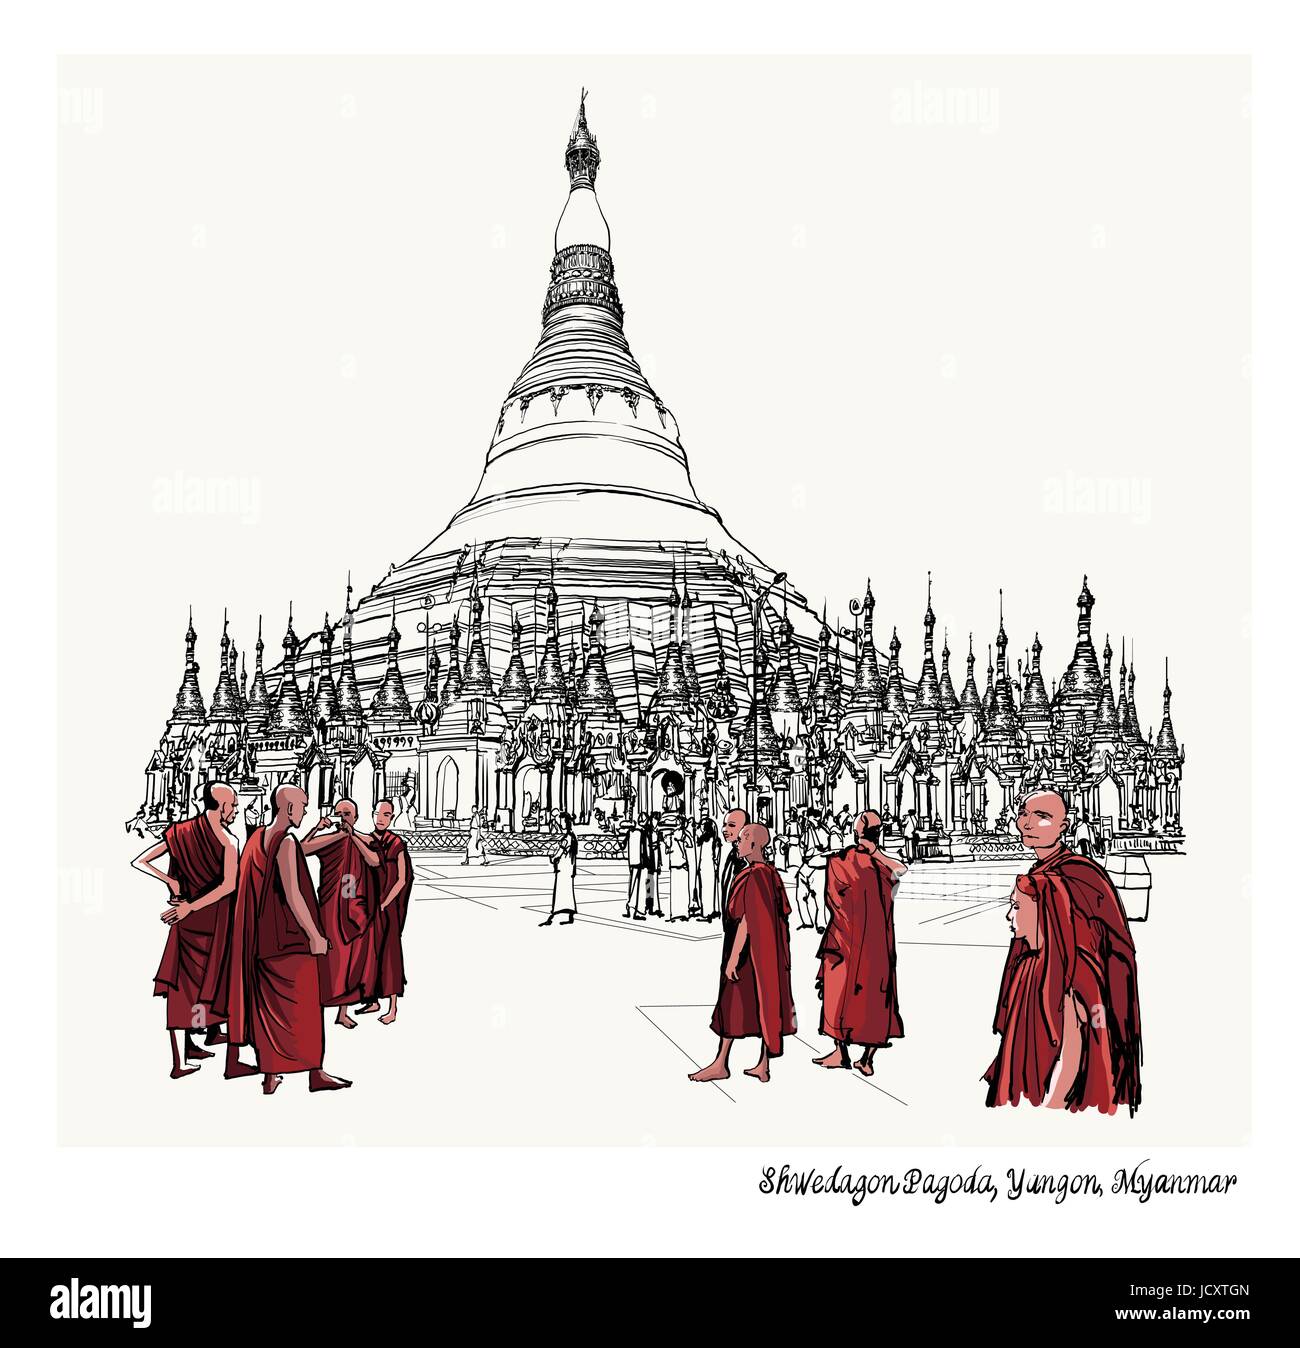 Yangon, Myanmar Ansicht der Shwedagon-Pagode - Vektor-illustration Stock Vektor